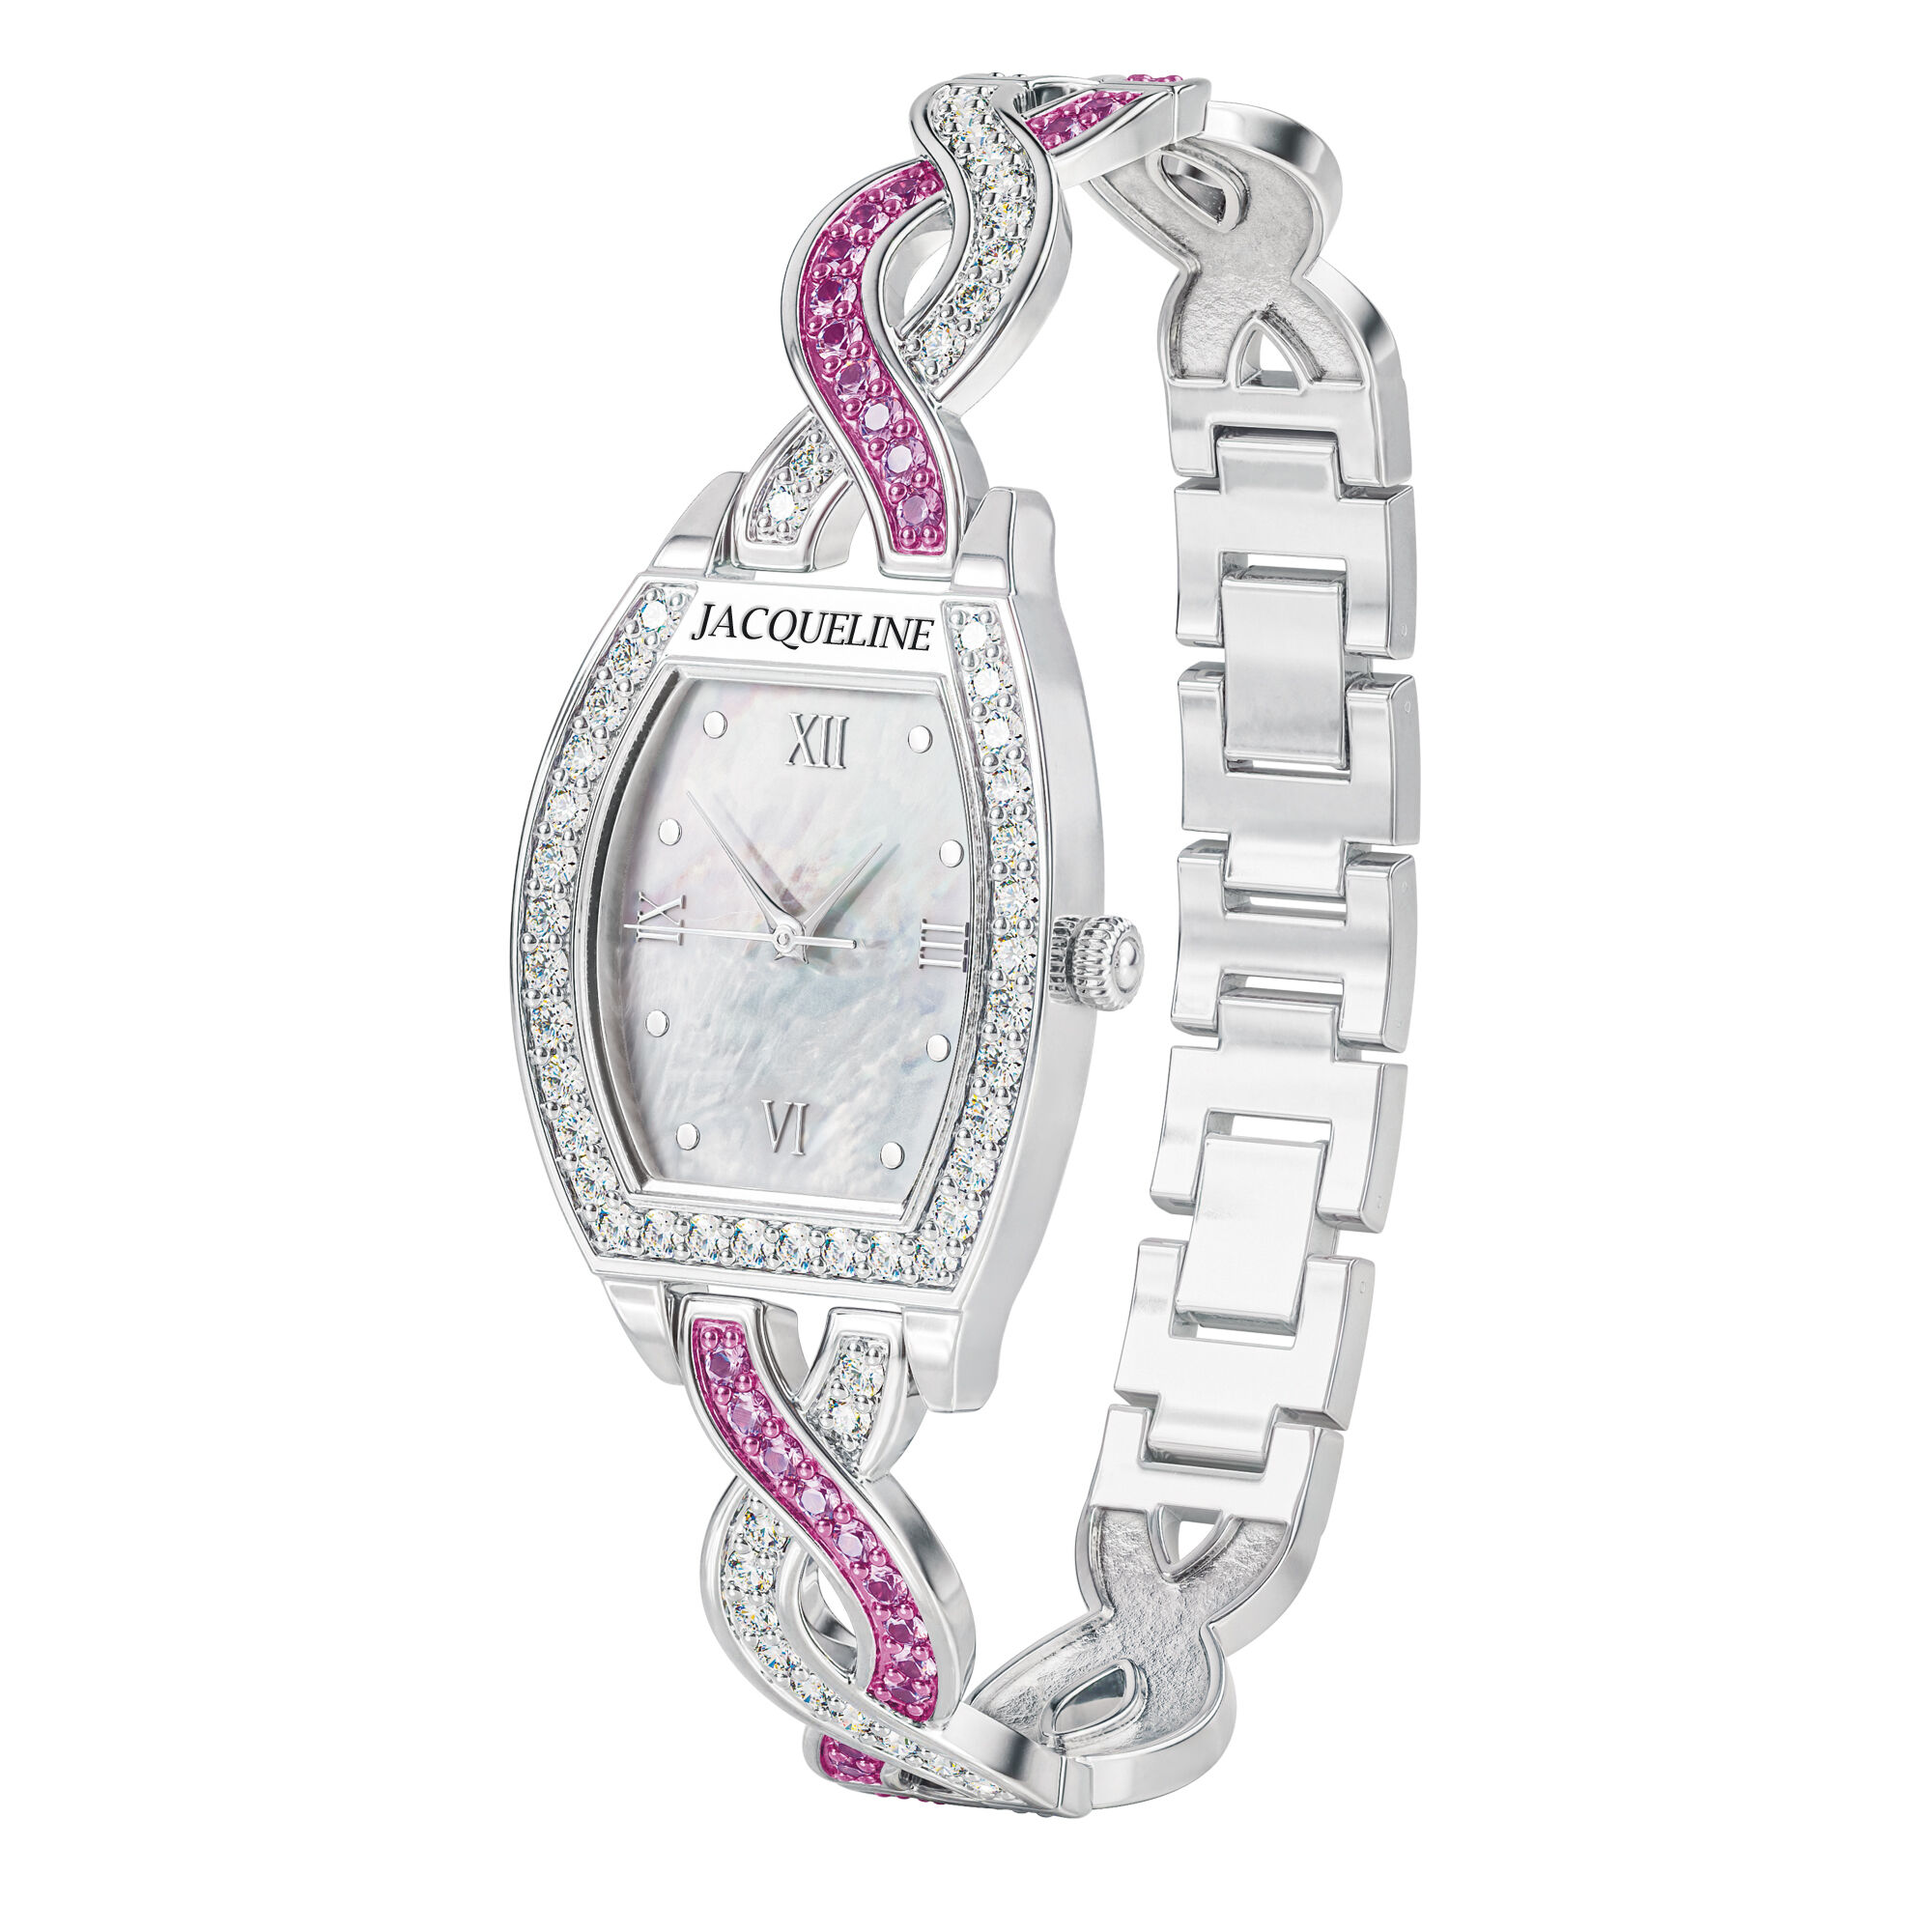 Birthstone Bracelet Watch 10148 0010 f june